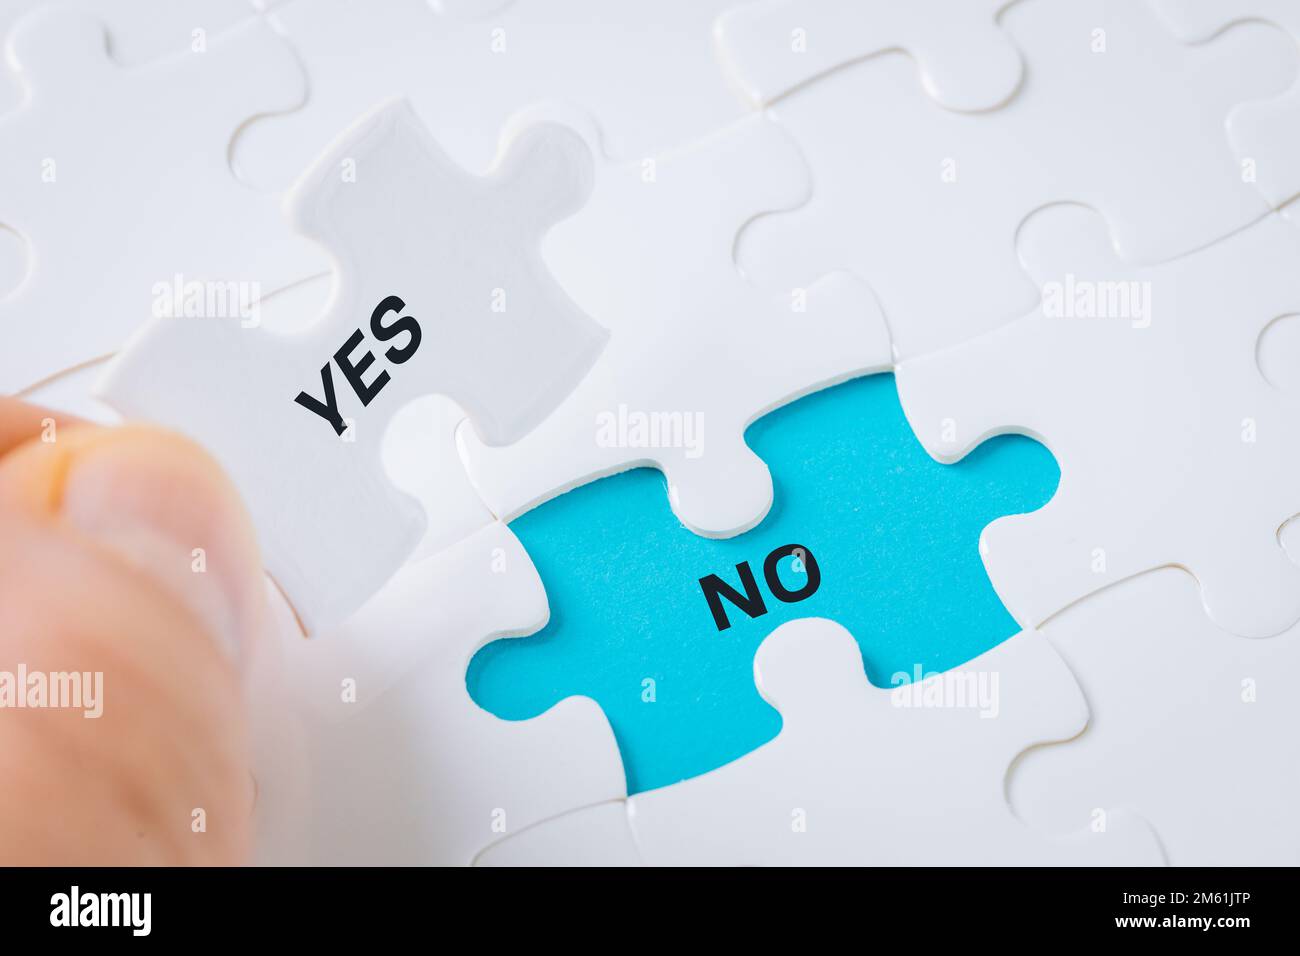 Ja, nein, die weiße Puzzle-Hand nimmt das Wort "Ja" auf und enthüllt das Wort "Nein" auf blauem Hintergrund, Konzept, Zustimmung und Ablehnung und trifft eine Entscheidung Stockfoto